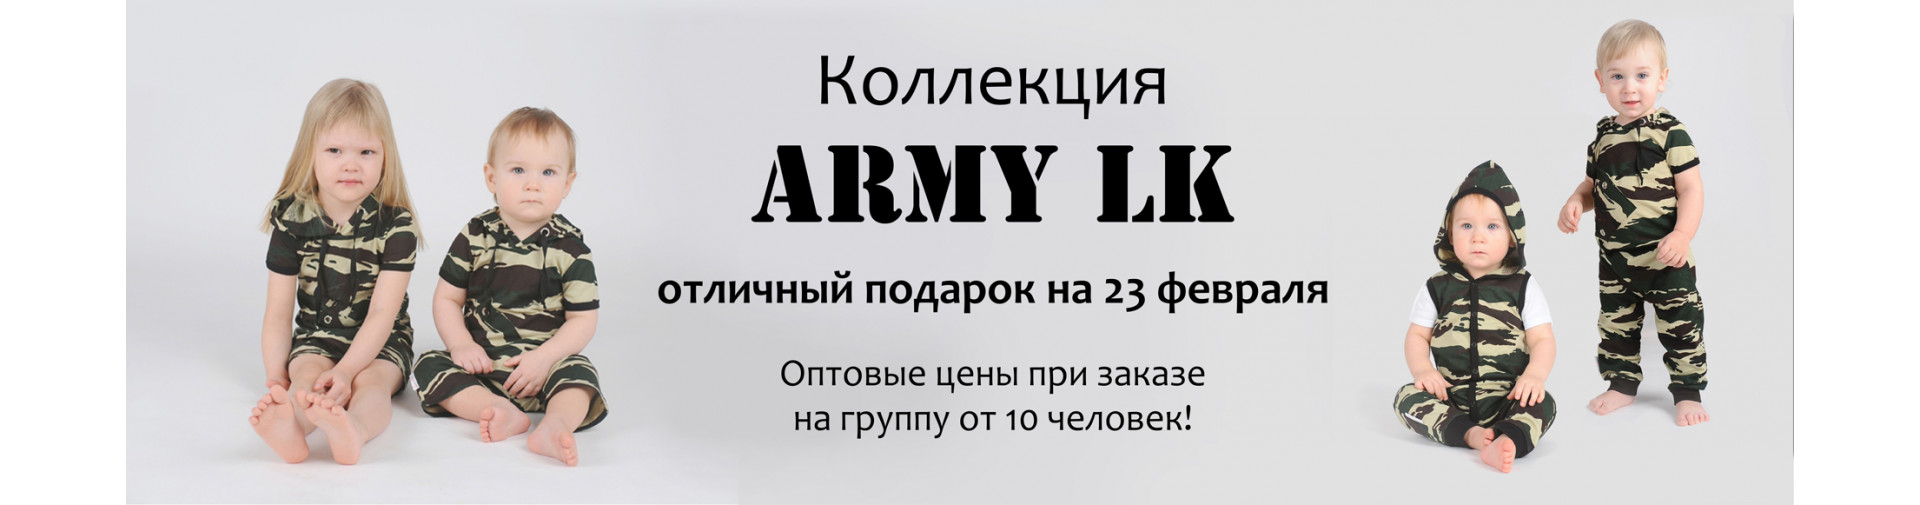 army lk